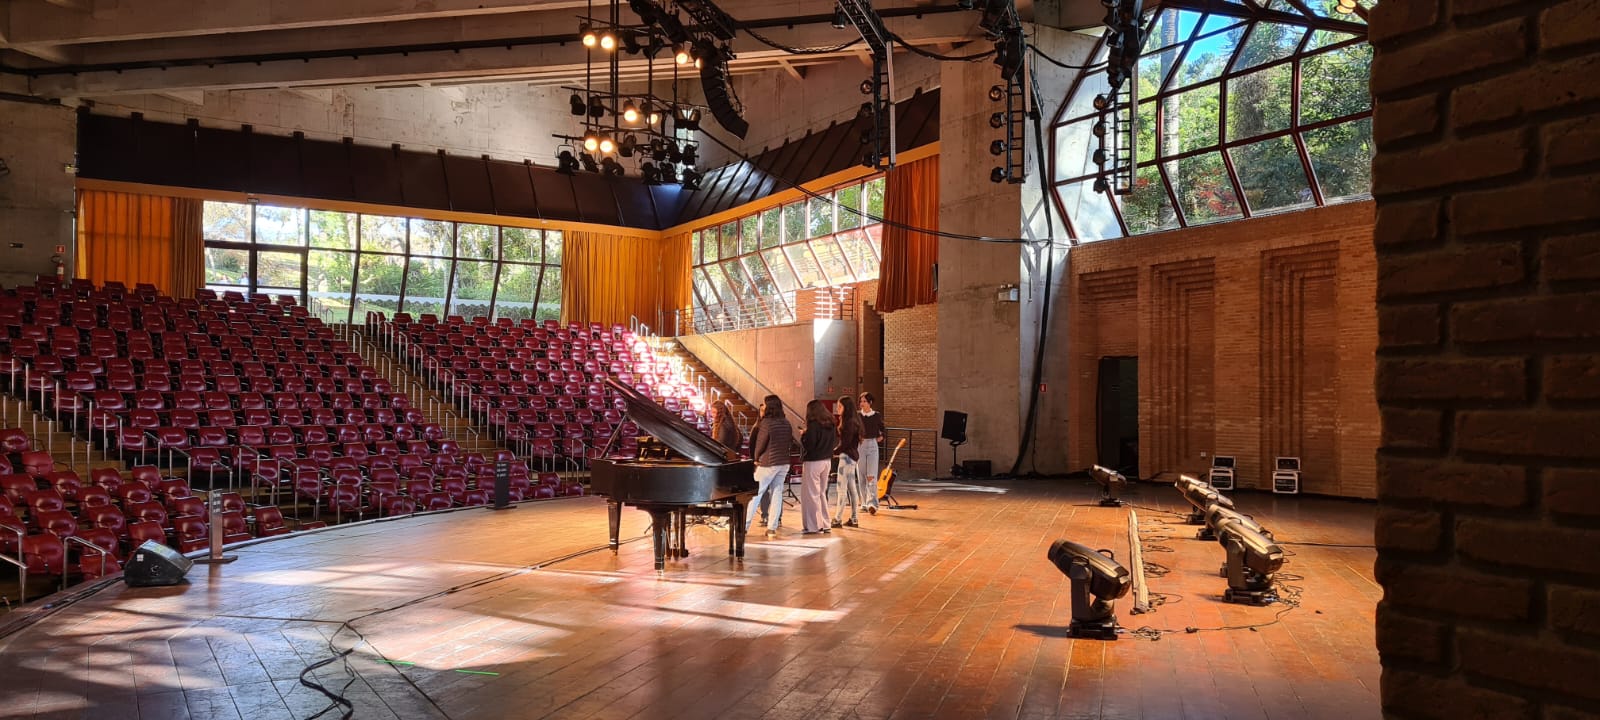 Na imagem, um grupo de jovens está no palco do Auditório Claudio Santoro se apresentando. No palco há um piano de calda e um violão.